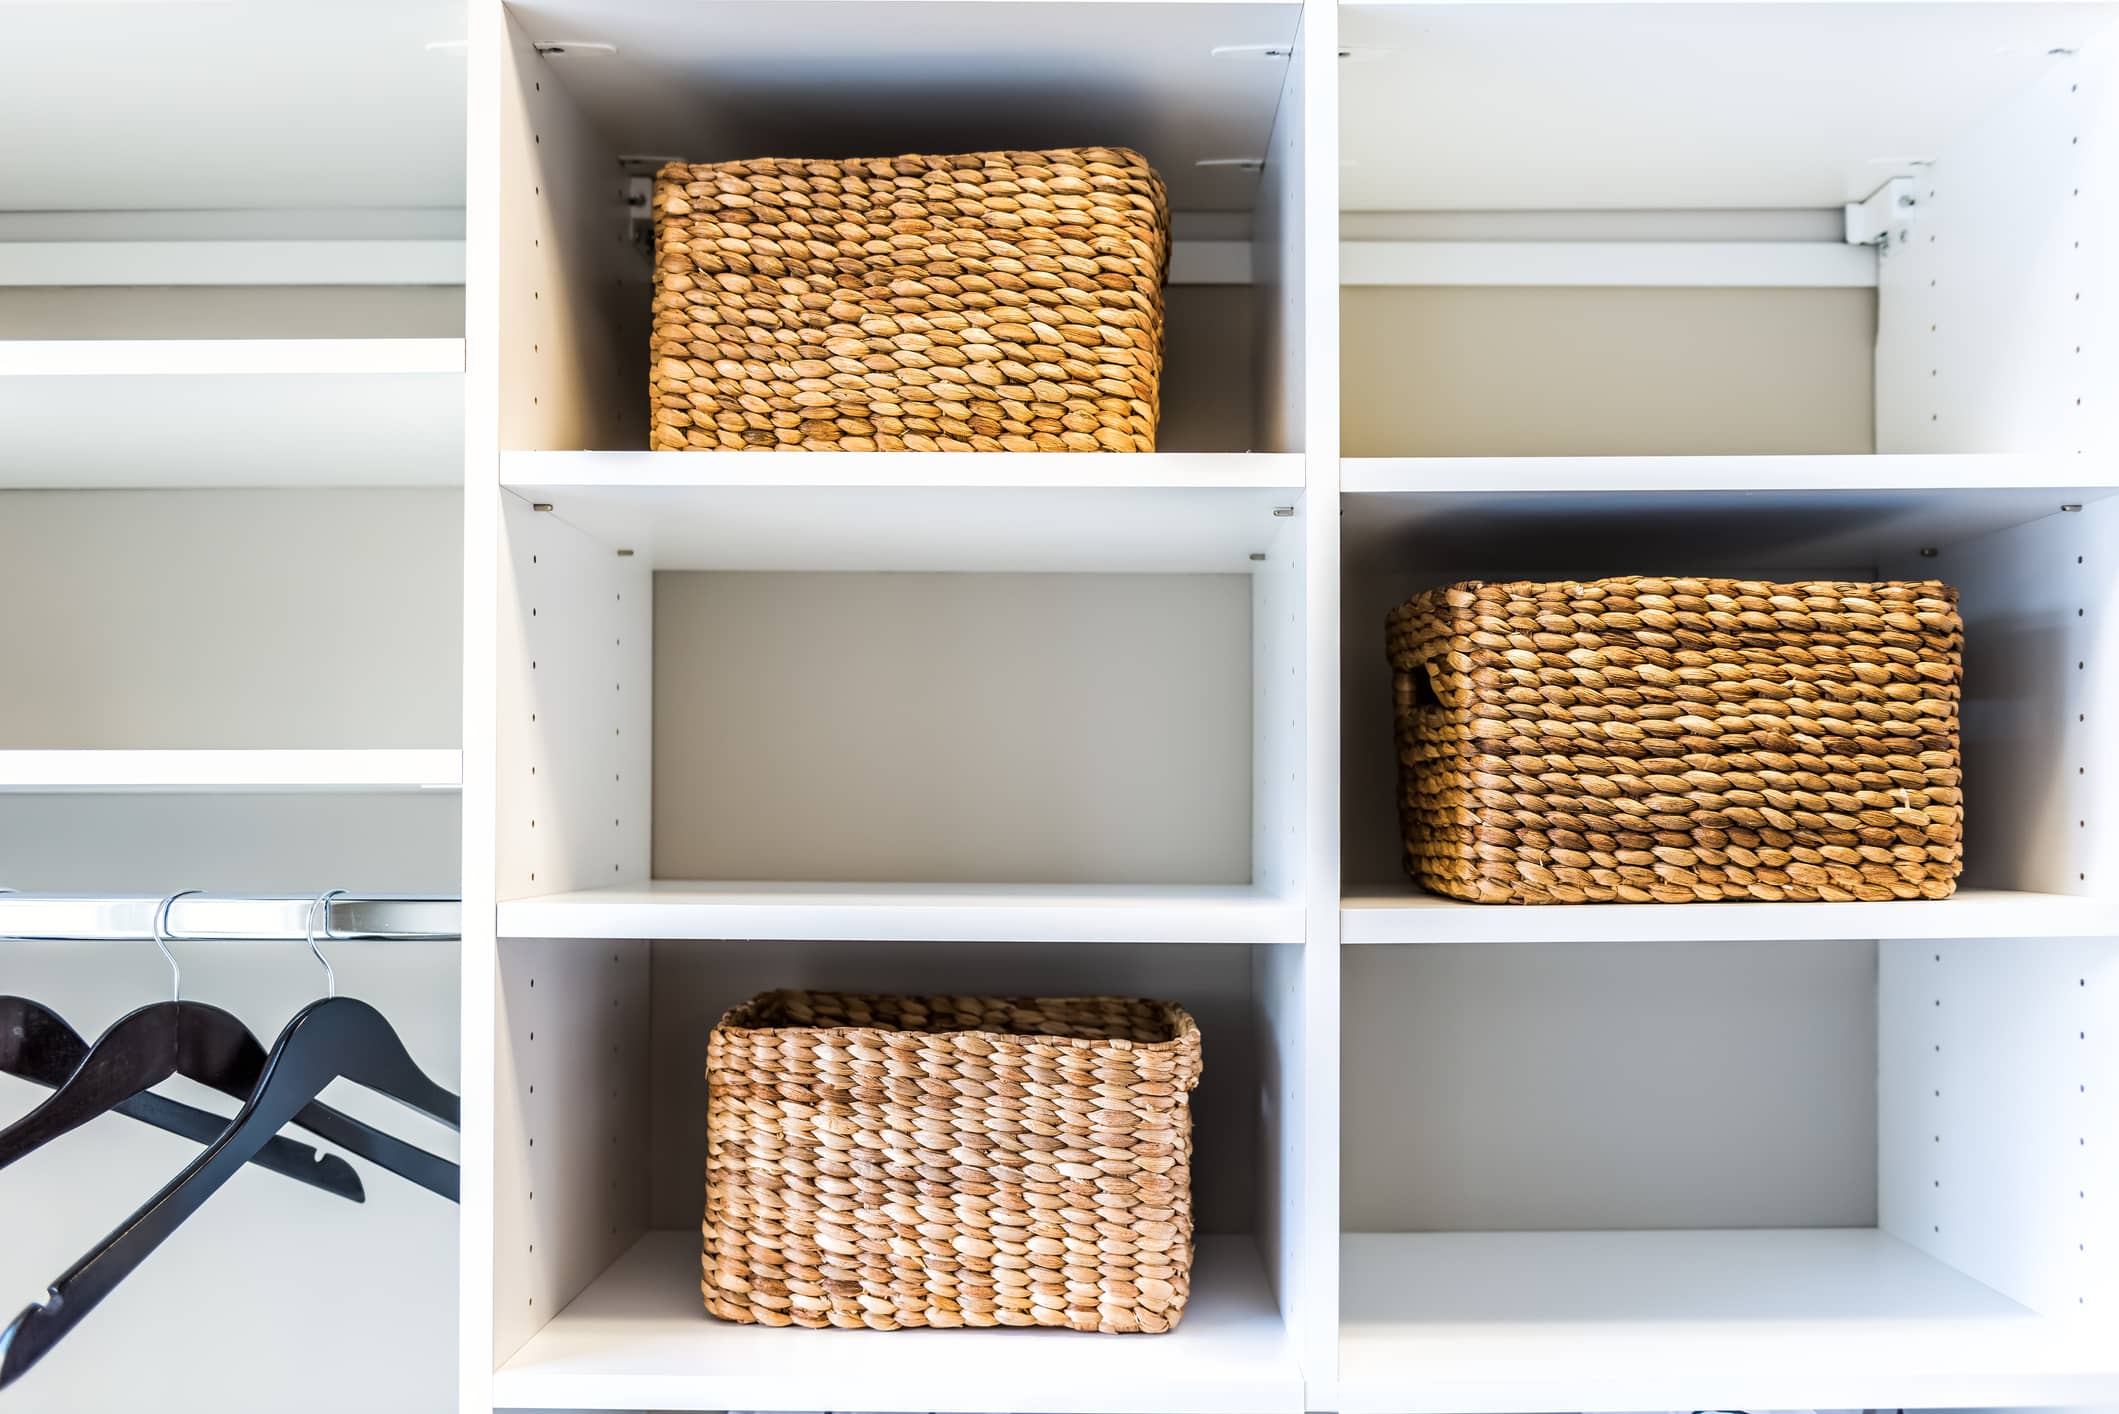 6 ideas que te encantarán para decorar tu hogar con cestas